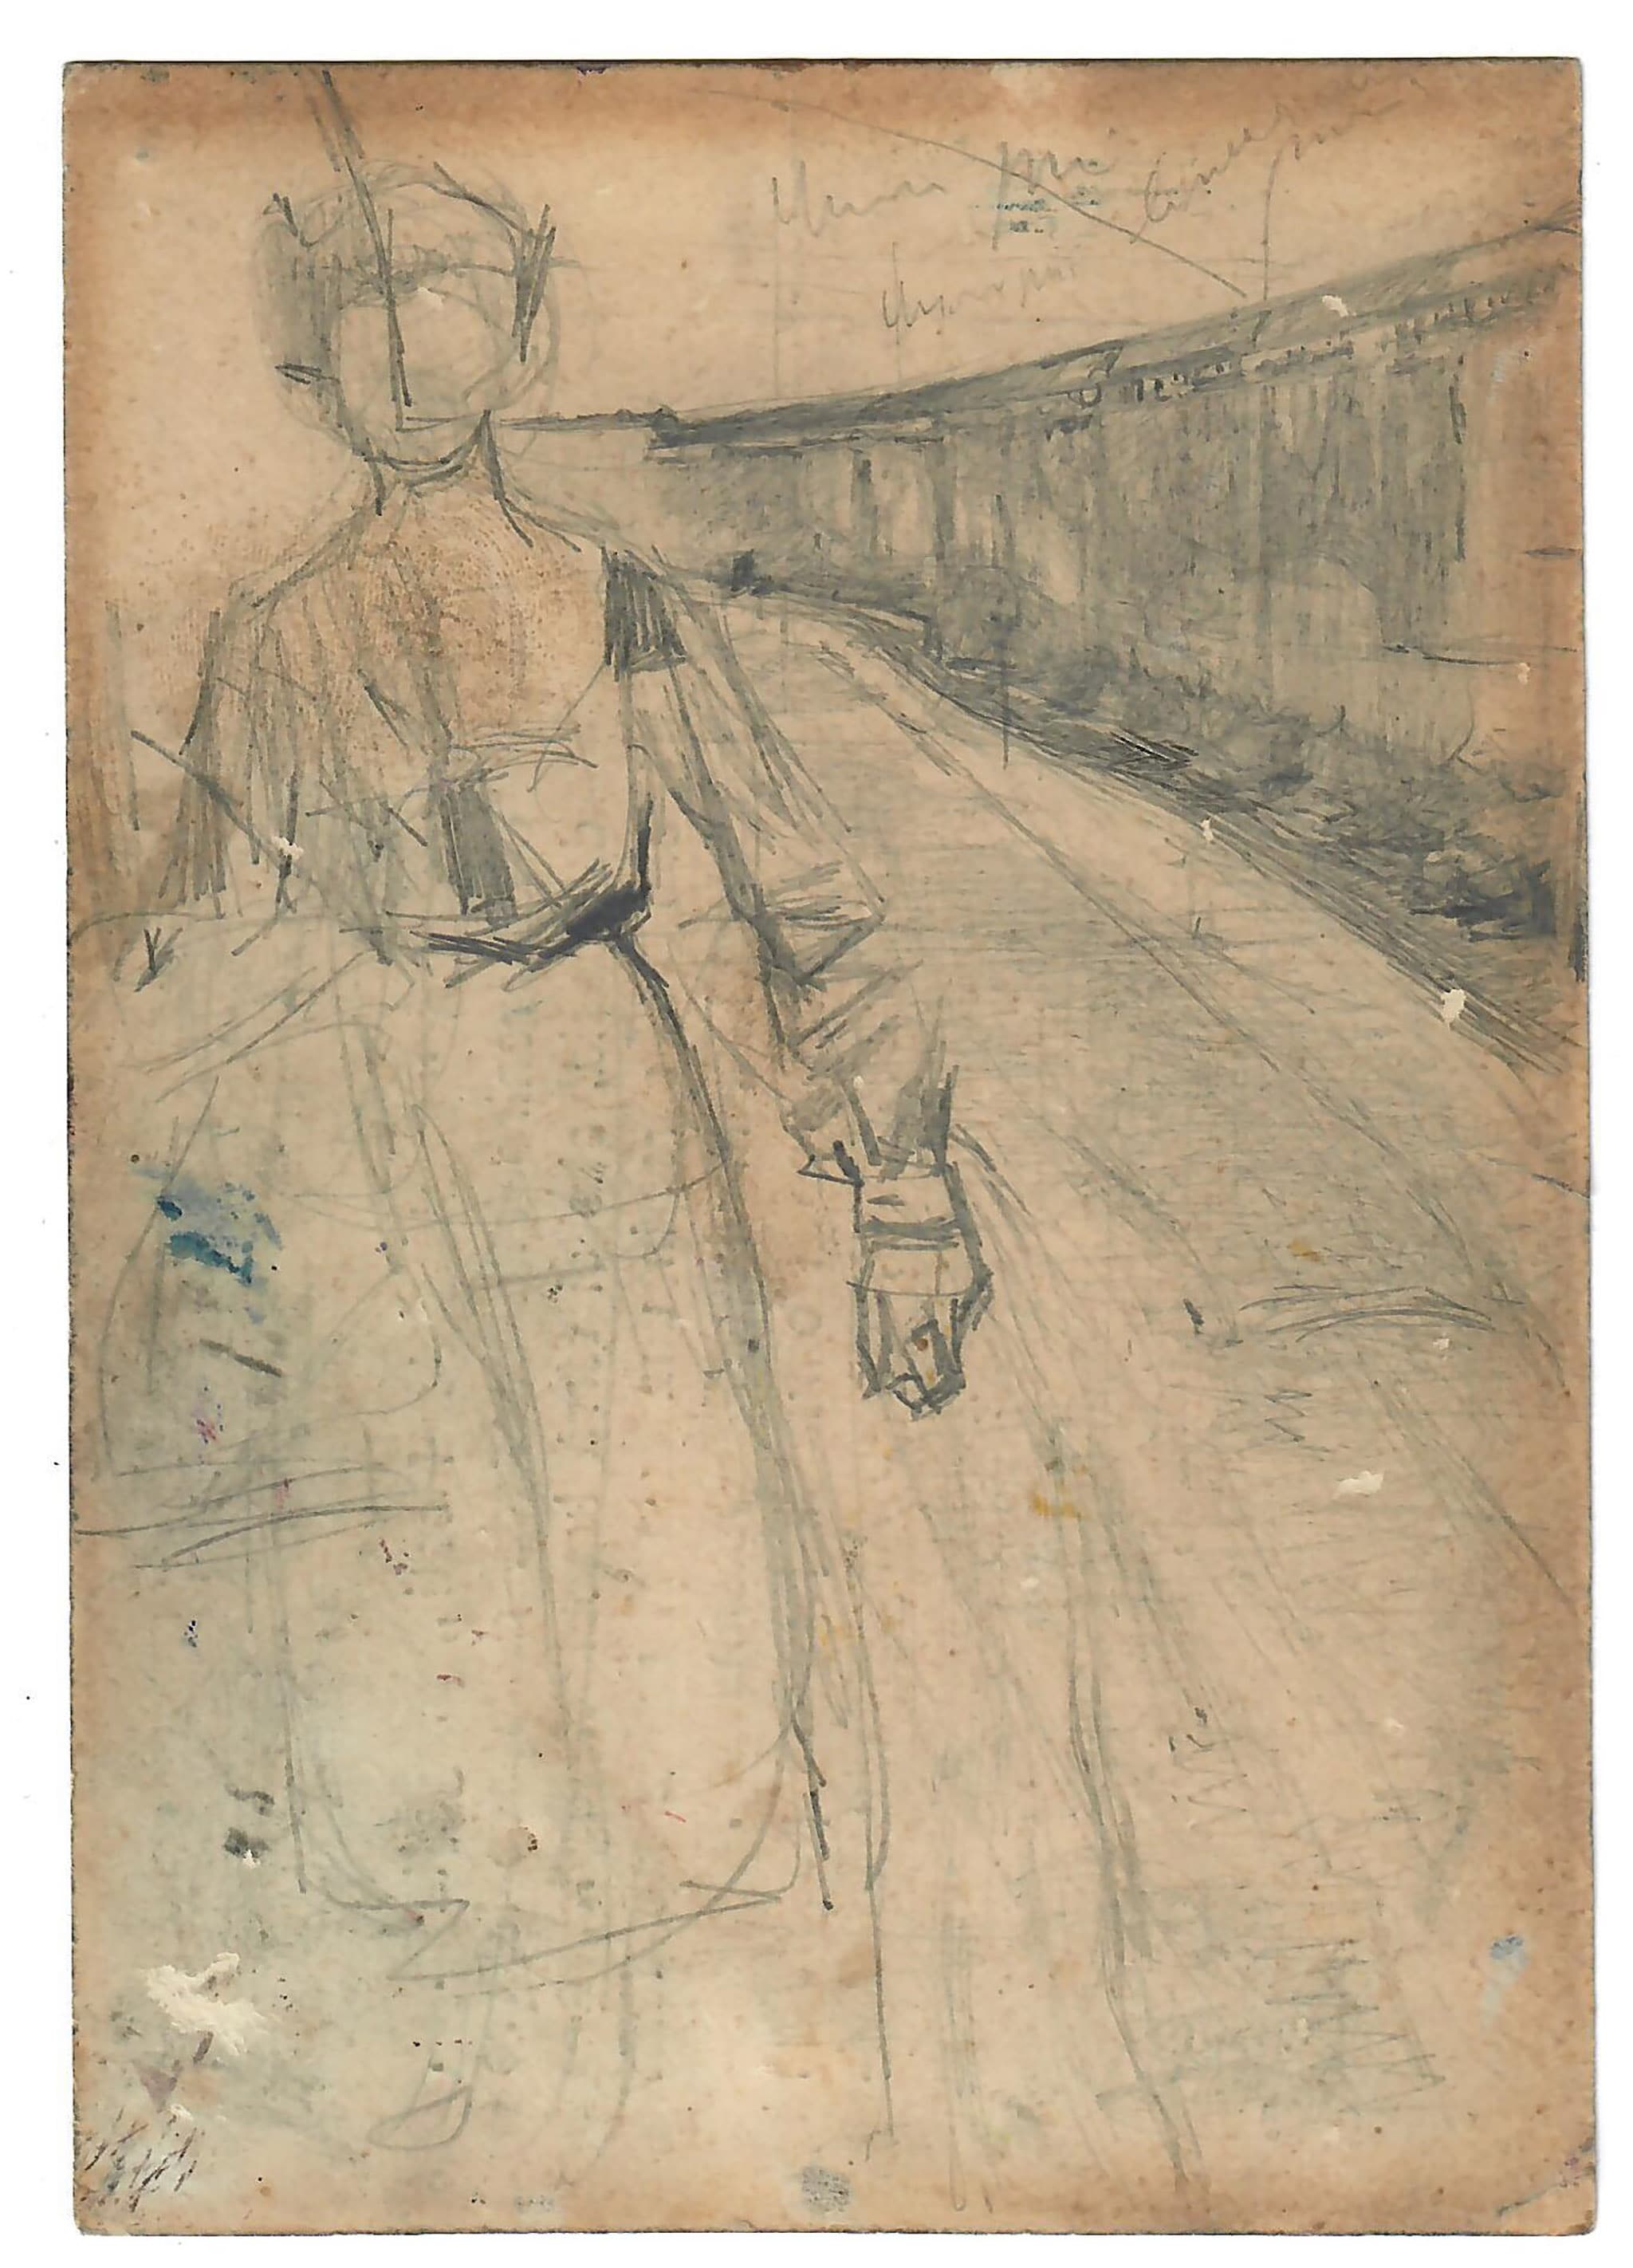 Giacomo Balla "La pazza", 1905. Matita su carta. Studio preparatorio per un grande dipinto disperso di cui si conserva soltanto una documentazione fotografica. 